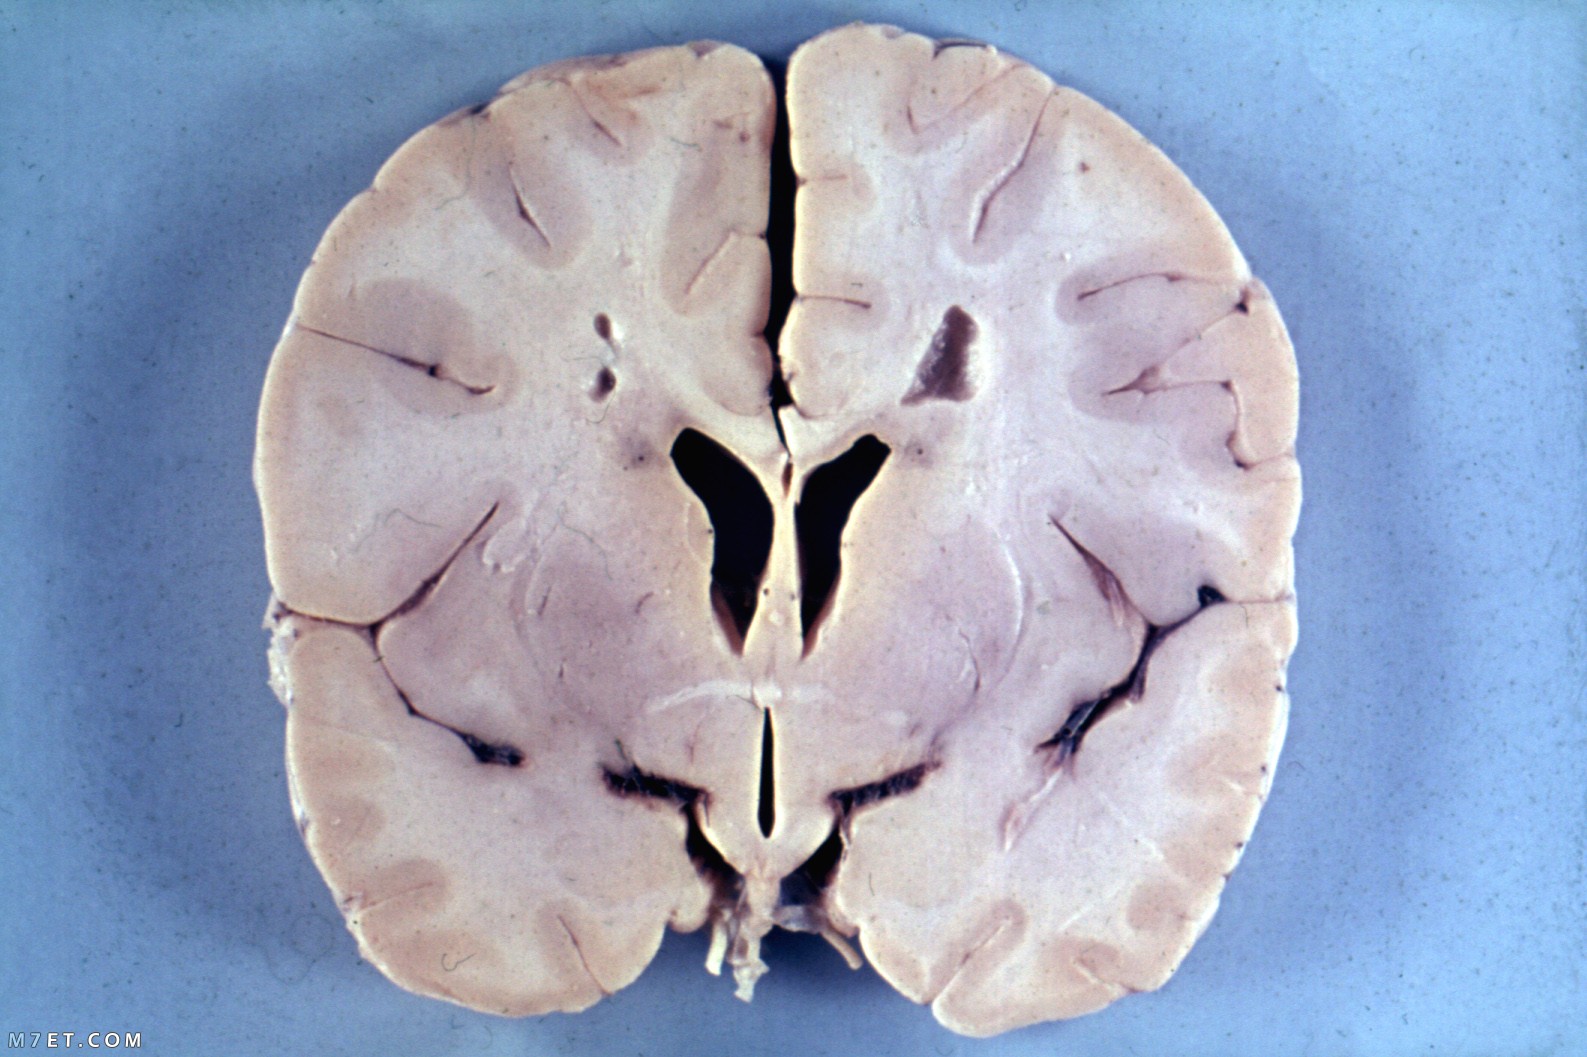 أعراض التهاب الدماغ الحاد المنتشر